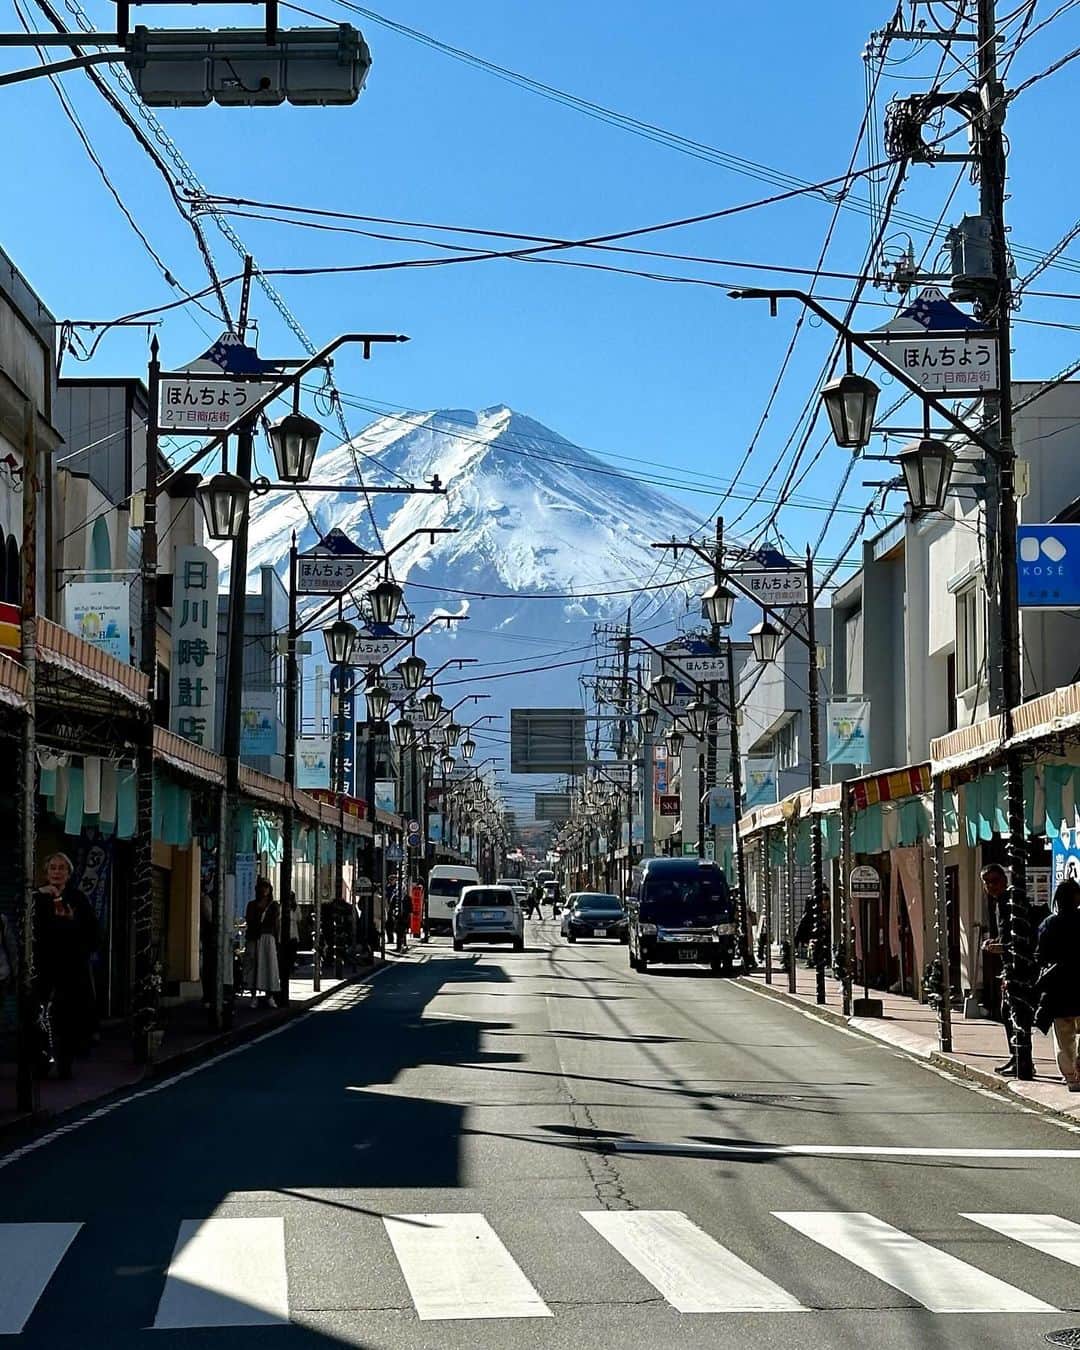 早坂香須子のインスタグラム：「富士吉田はなんと言っても 街歩きが最高に楽しかった！  レトロでモダンでなんだかとっても懐かしいけど新しく、いつもそこには表情の違う富士山が在る。  @fujitextileweek はアート会場を徒歩で移動しながら、2キロほどの街歩きにちょうどいい距離感も最高で、疲れたら美味しいカフェでひと休み🍮  光の粒子が綺麗な感じがするのは、街を流れる富士山の雪解け水のせい？  実は私、10年ほど前に富士吉田にあるリネン屋さんのパンフレットに（部屋と私が）登場したことがあり、既にご縁があったこの街と、芸術祭のおかげで、またご縁が繋がって嬉しい。  誘ってくれたファッションディレクター軍地彩弓ちゃん @sayumi7  アテンドしてくれた @noi_aroma の大河くん、 ありがとうございました❣️  東京から富士吉田まで1時間半。この近さにも驚き‼️  @fujitextileweek   会 期: 2023年11月23日(木・祝)− 12月17日(日) 休 み: 期間中の月曜日(11月27日、12月4日、12月11日) 時 間: 10:00 −16:00 会 場: 山梨県富士吉田市下吉田本町通り周辺地域   料 金: 一般 1,200円(税込) ※「アート展」「デザイン展」「FUJI SKY ROOF」に入場いただけます ※総合案内所でスタンプラリーの台紙を配布。各会場で入場スタンプを捺印します(会期中有効) ※一部、無料で参加いただけるイベントがございます       #fujitextileweek #フジテキスタイルウィーク #布の芸術祭 #富士吉田」